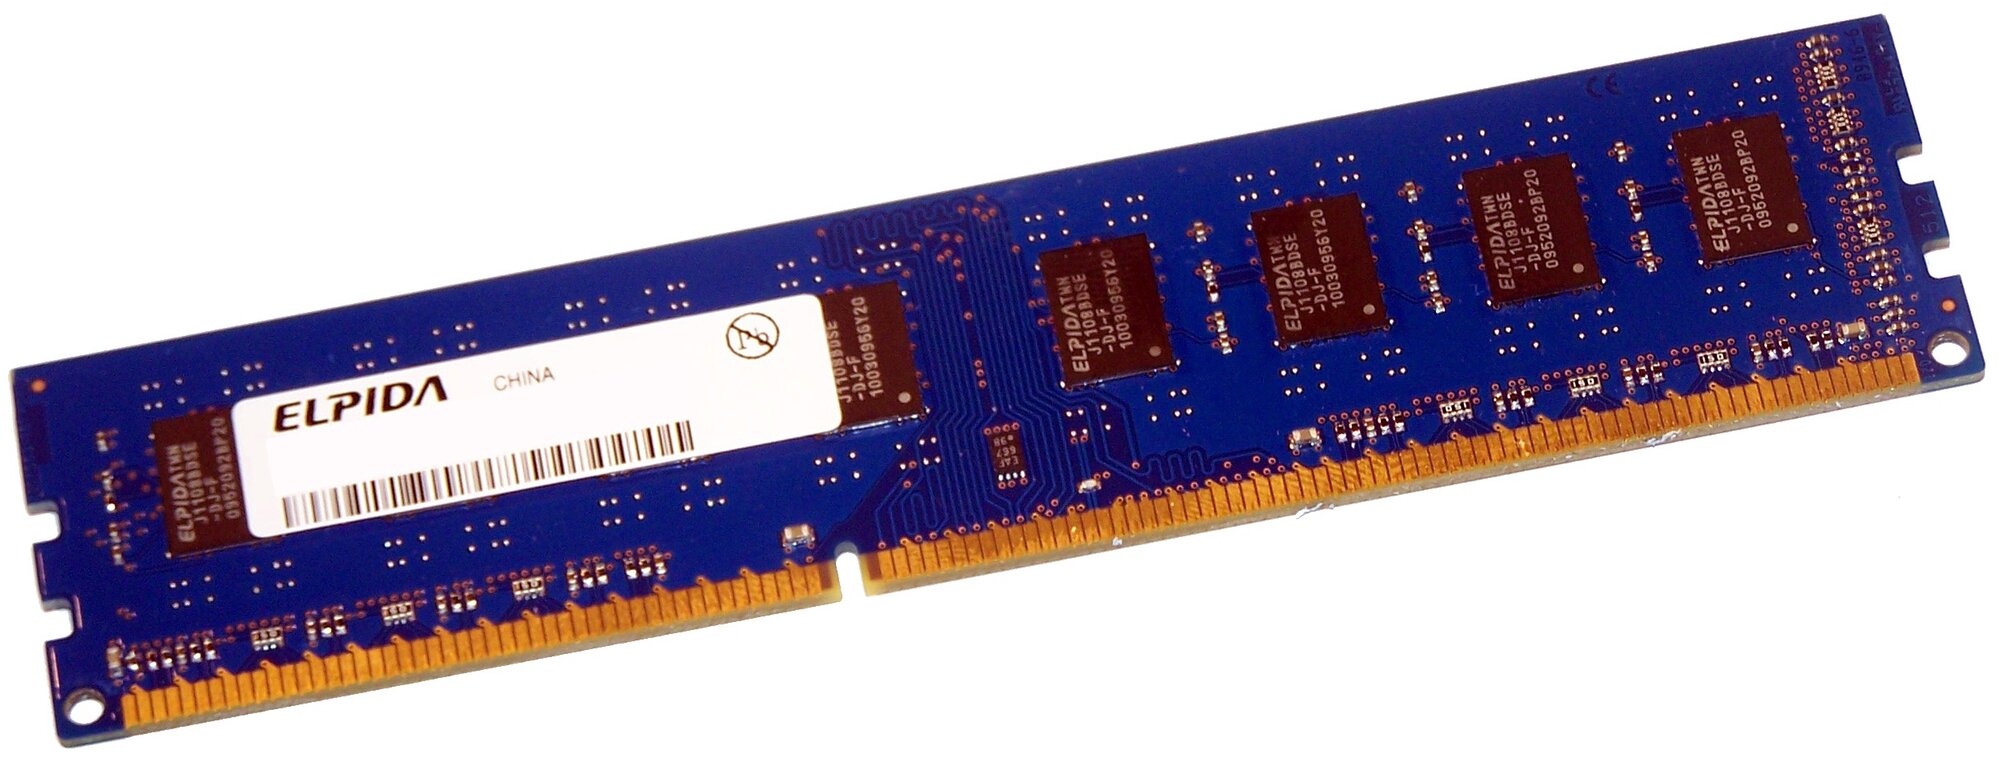 Elpida Модуль памяти DIMM DDR3 2048Mb, 1333Mhz, Elpida #EBJ20UF8BCF0-DJ-F